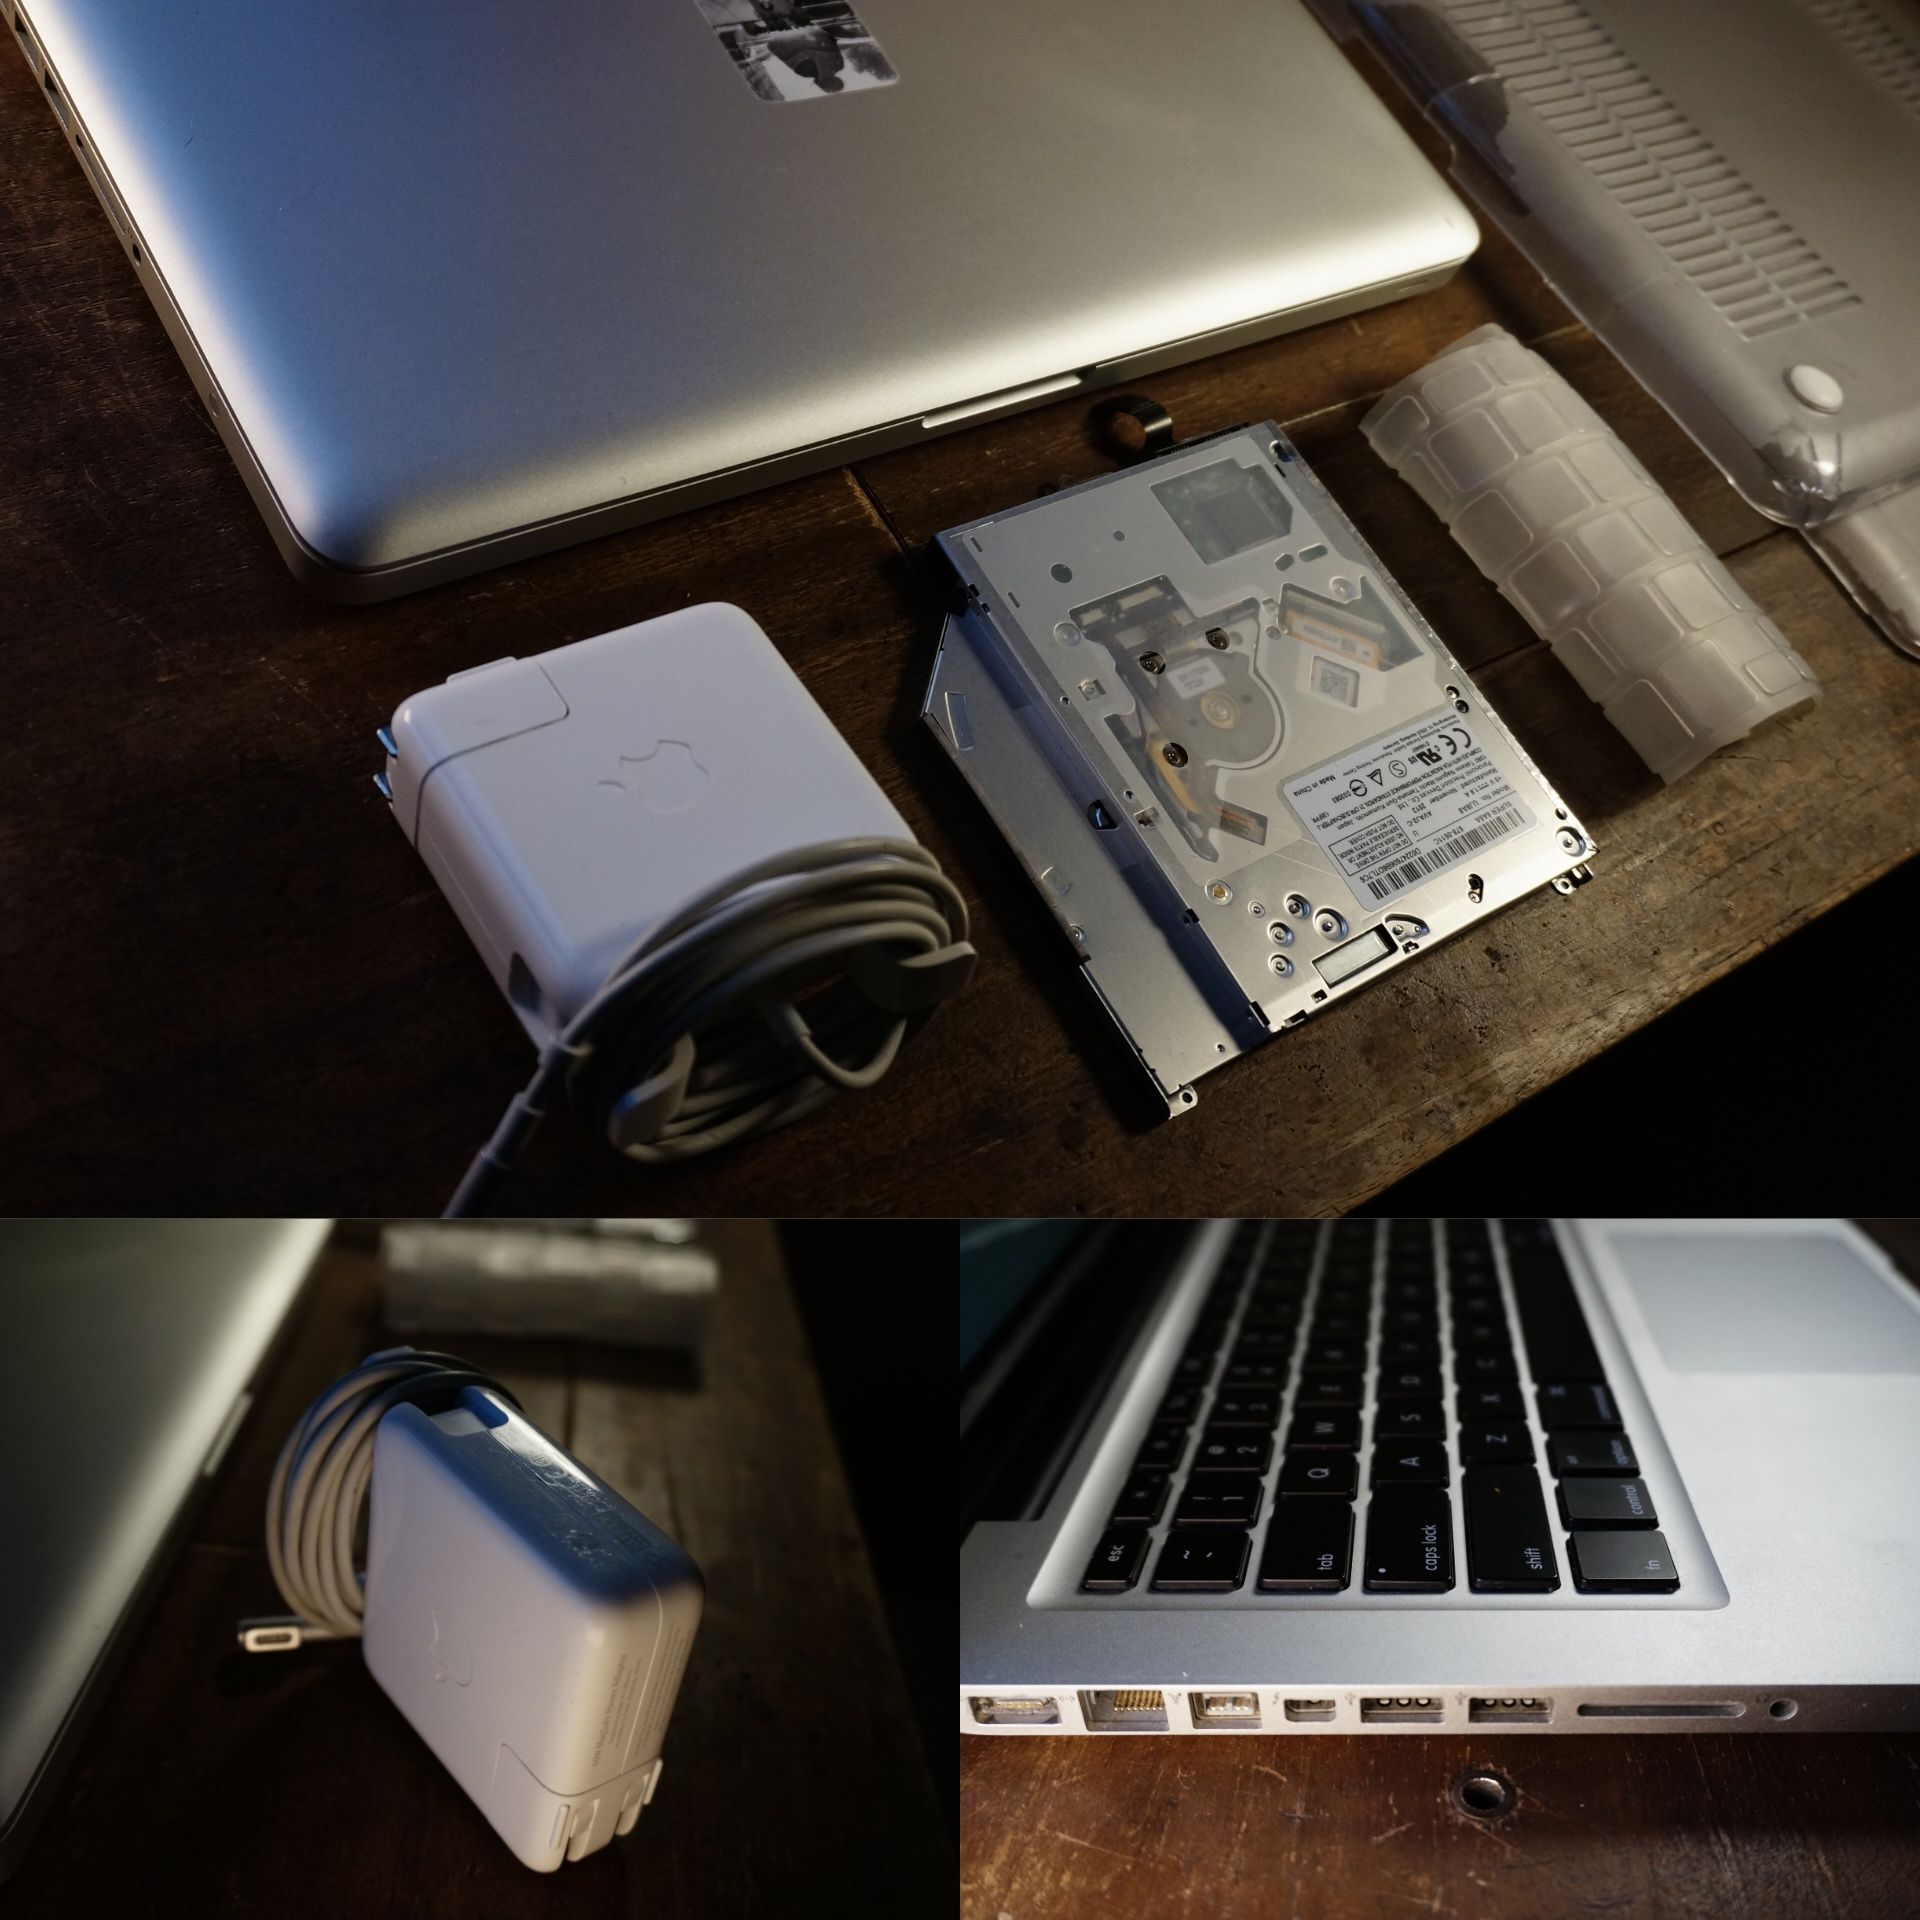 MacBook pro 13 2012 mid i5 8gb ram 240gb ssd